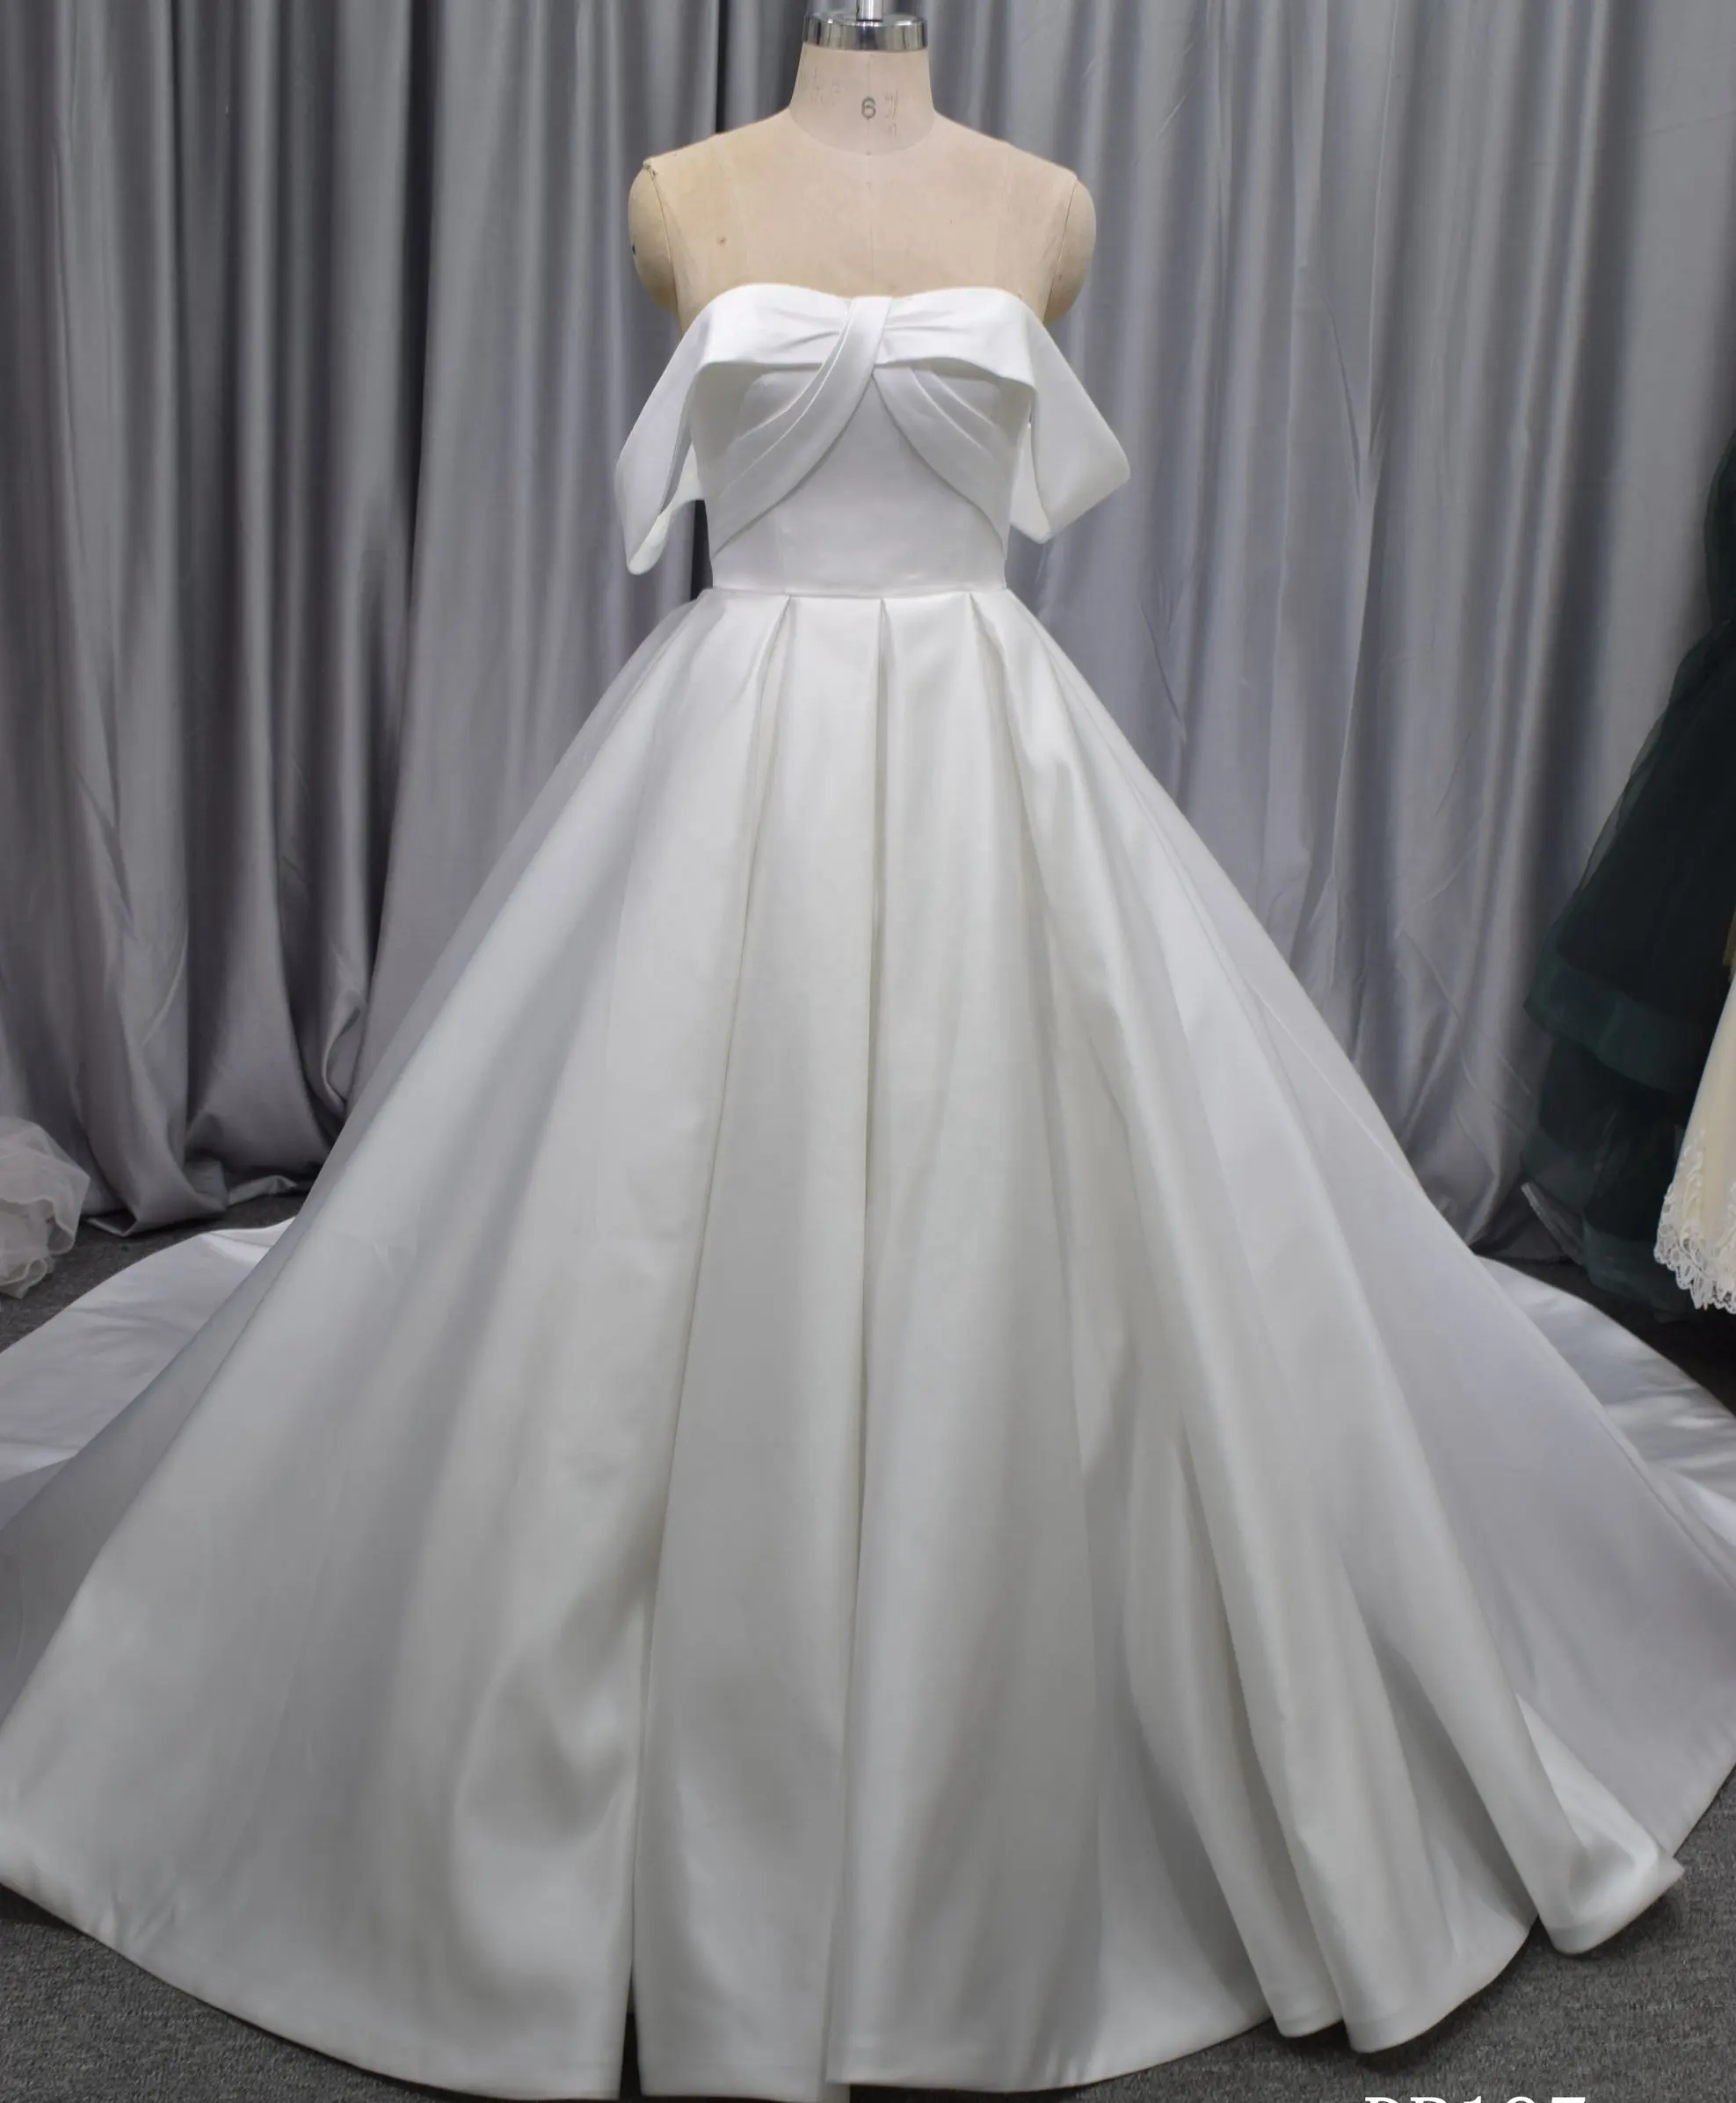 Gaun Pernikahan Wanita, Bisa Disesuaikan Warna Putih Gading Modern Belok Rok Panjang Gaun Pengantin Perempuan